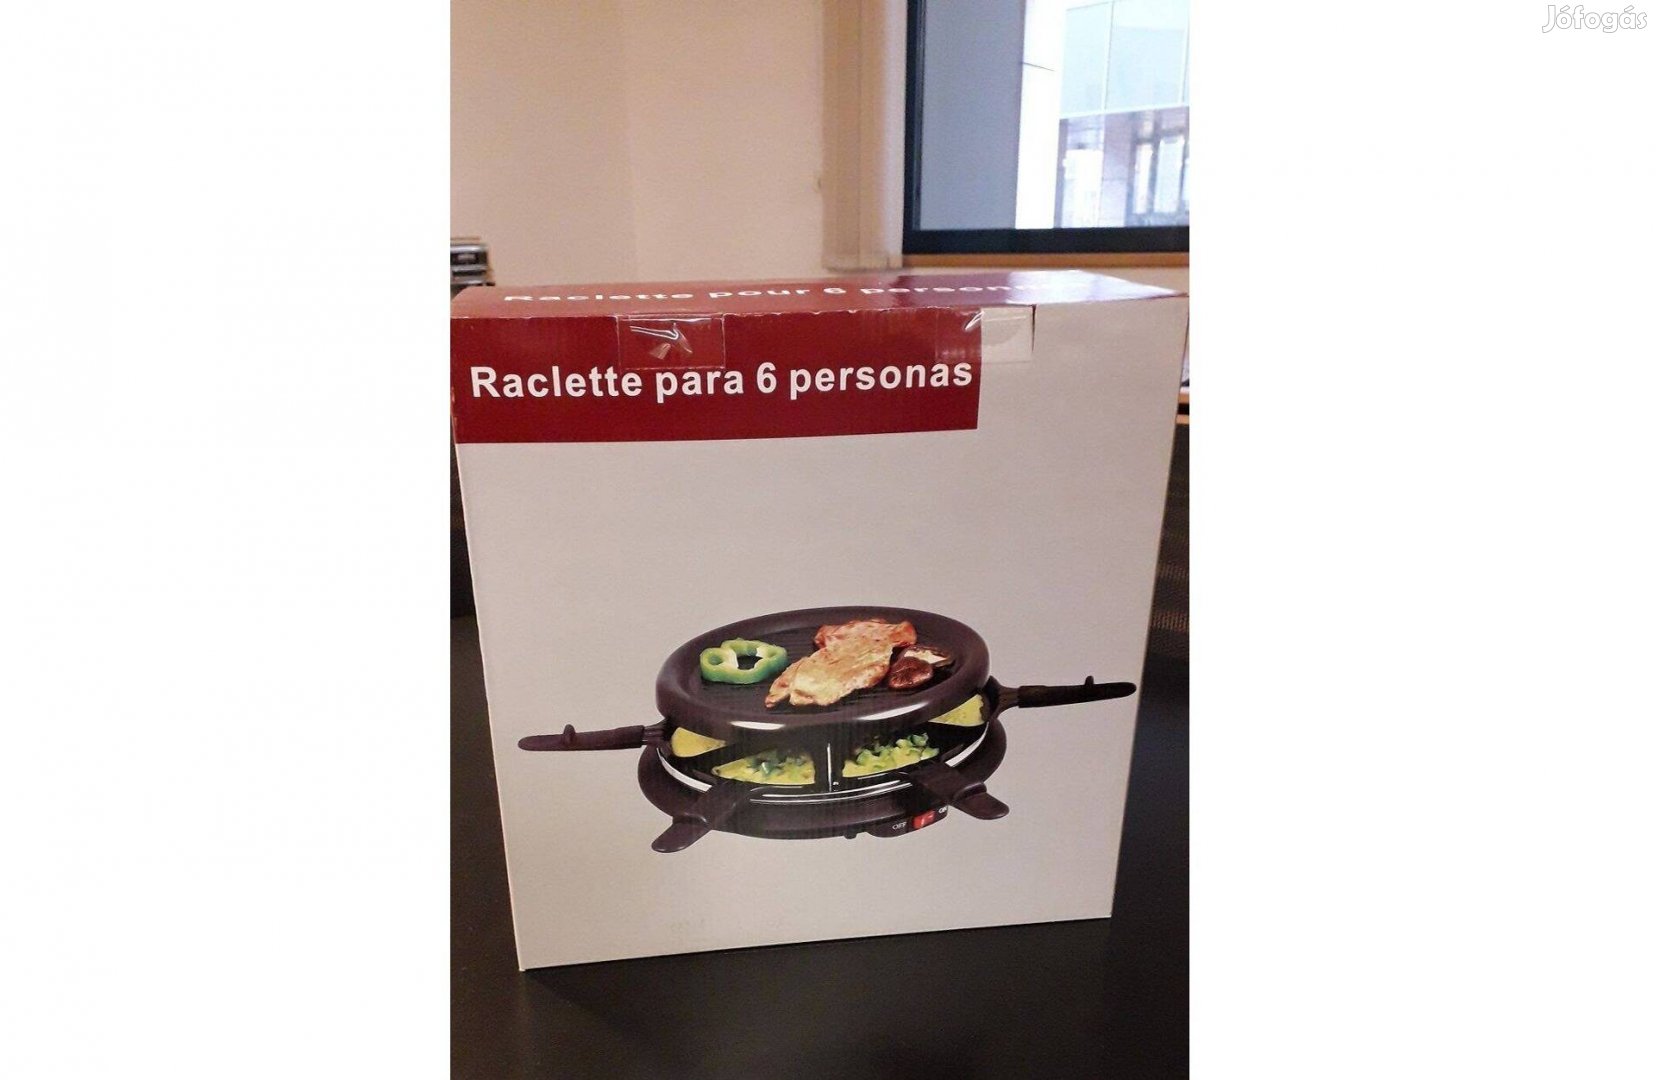 Raclette grillező akciós áron eladó - bontatlan!